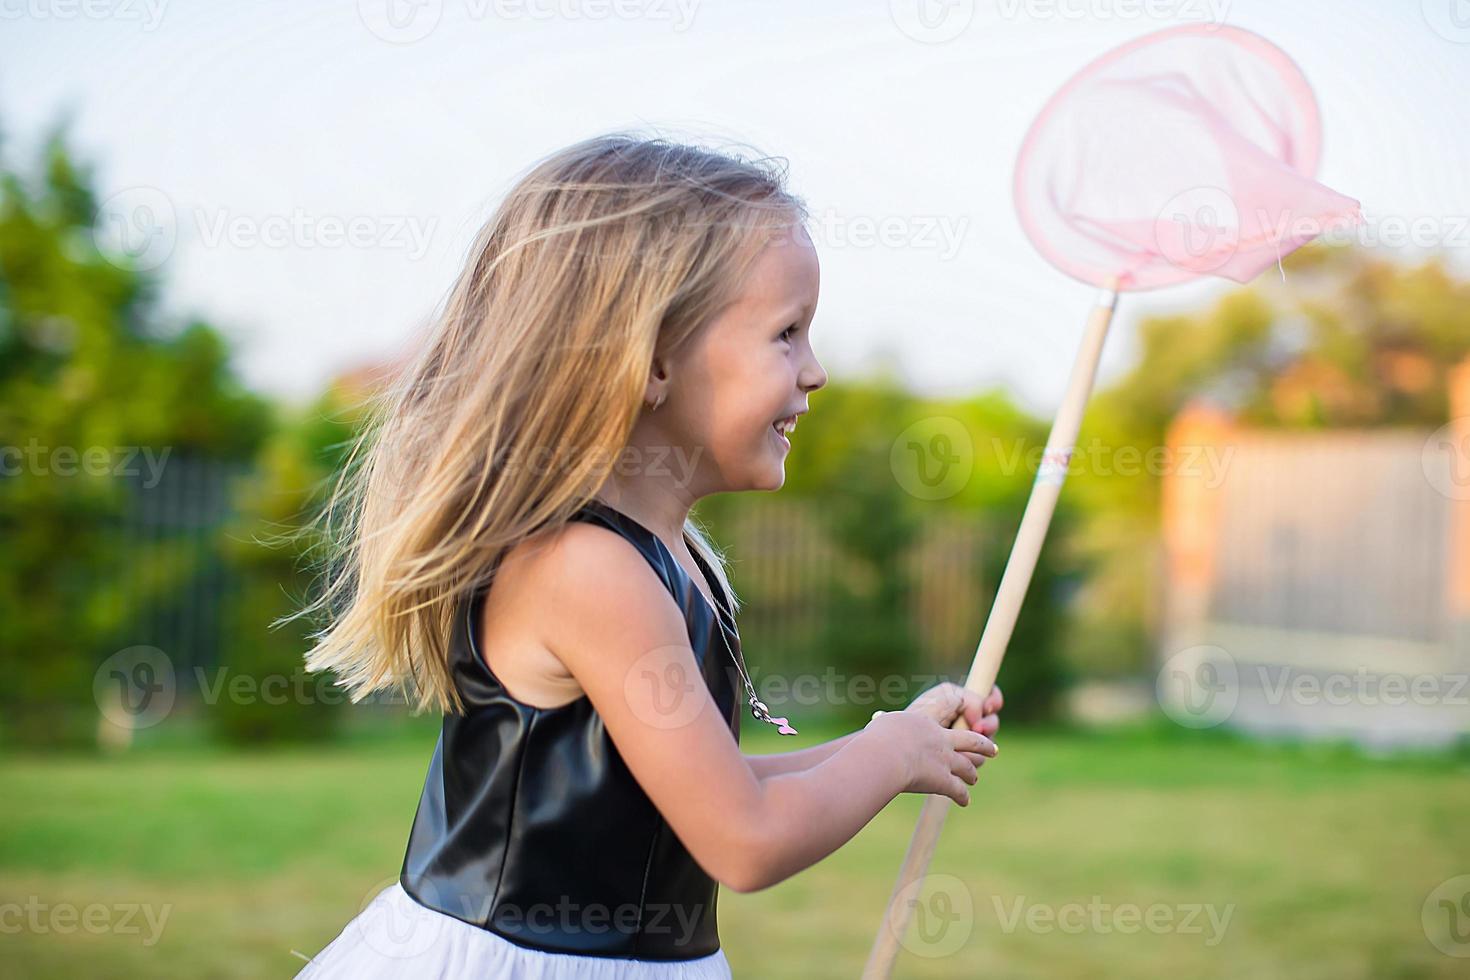 Adorable little girl catching butterflies butterfly net outdoors photo